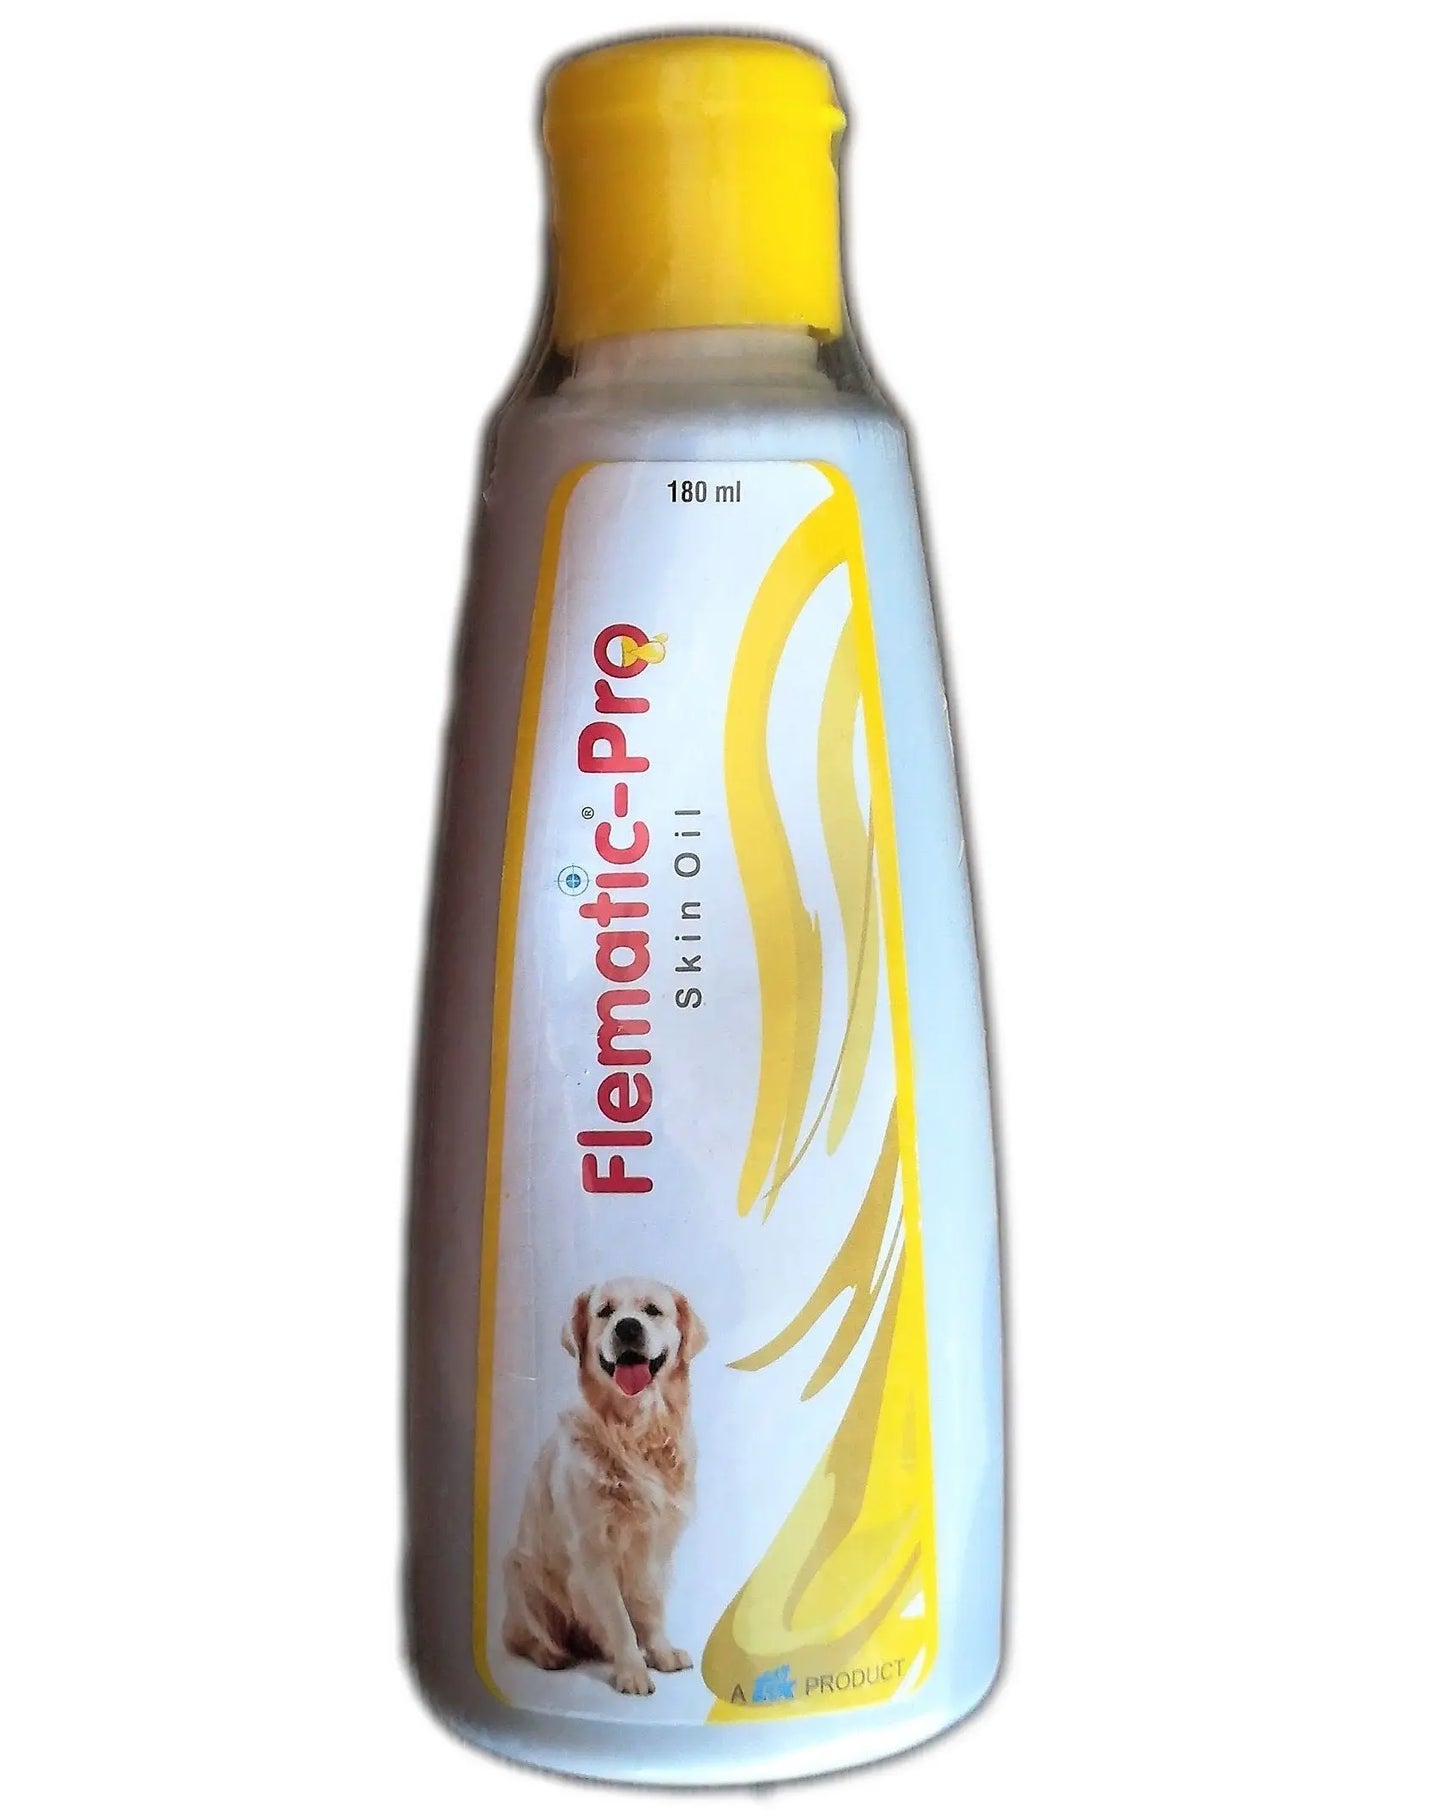 TTK FLEMATIC-Pro Skin Oil for Dogs (180 ml) pack of 2 Amanpetshop